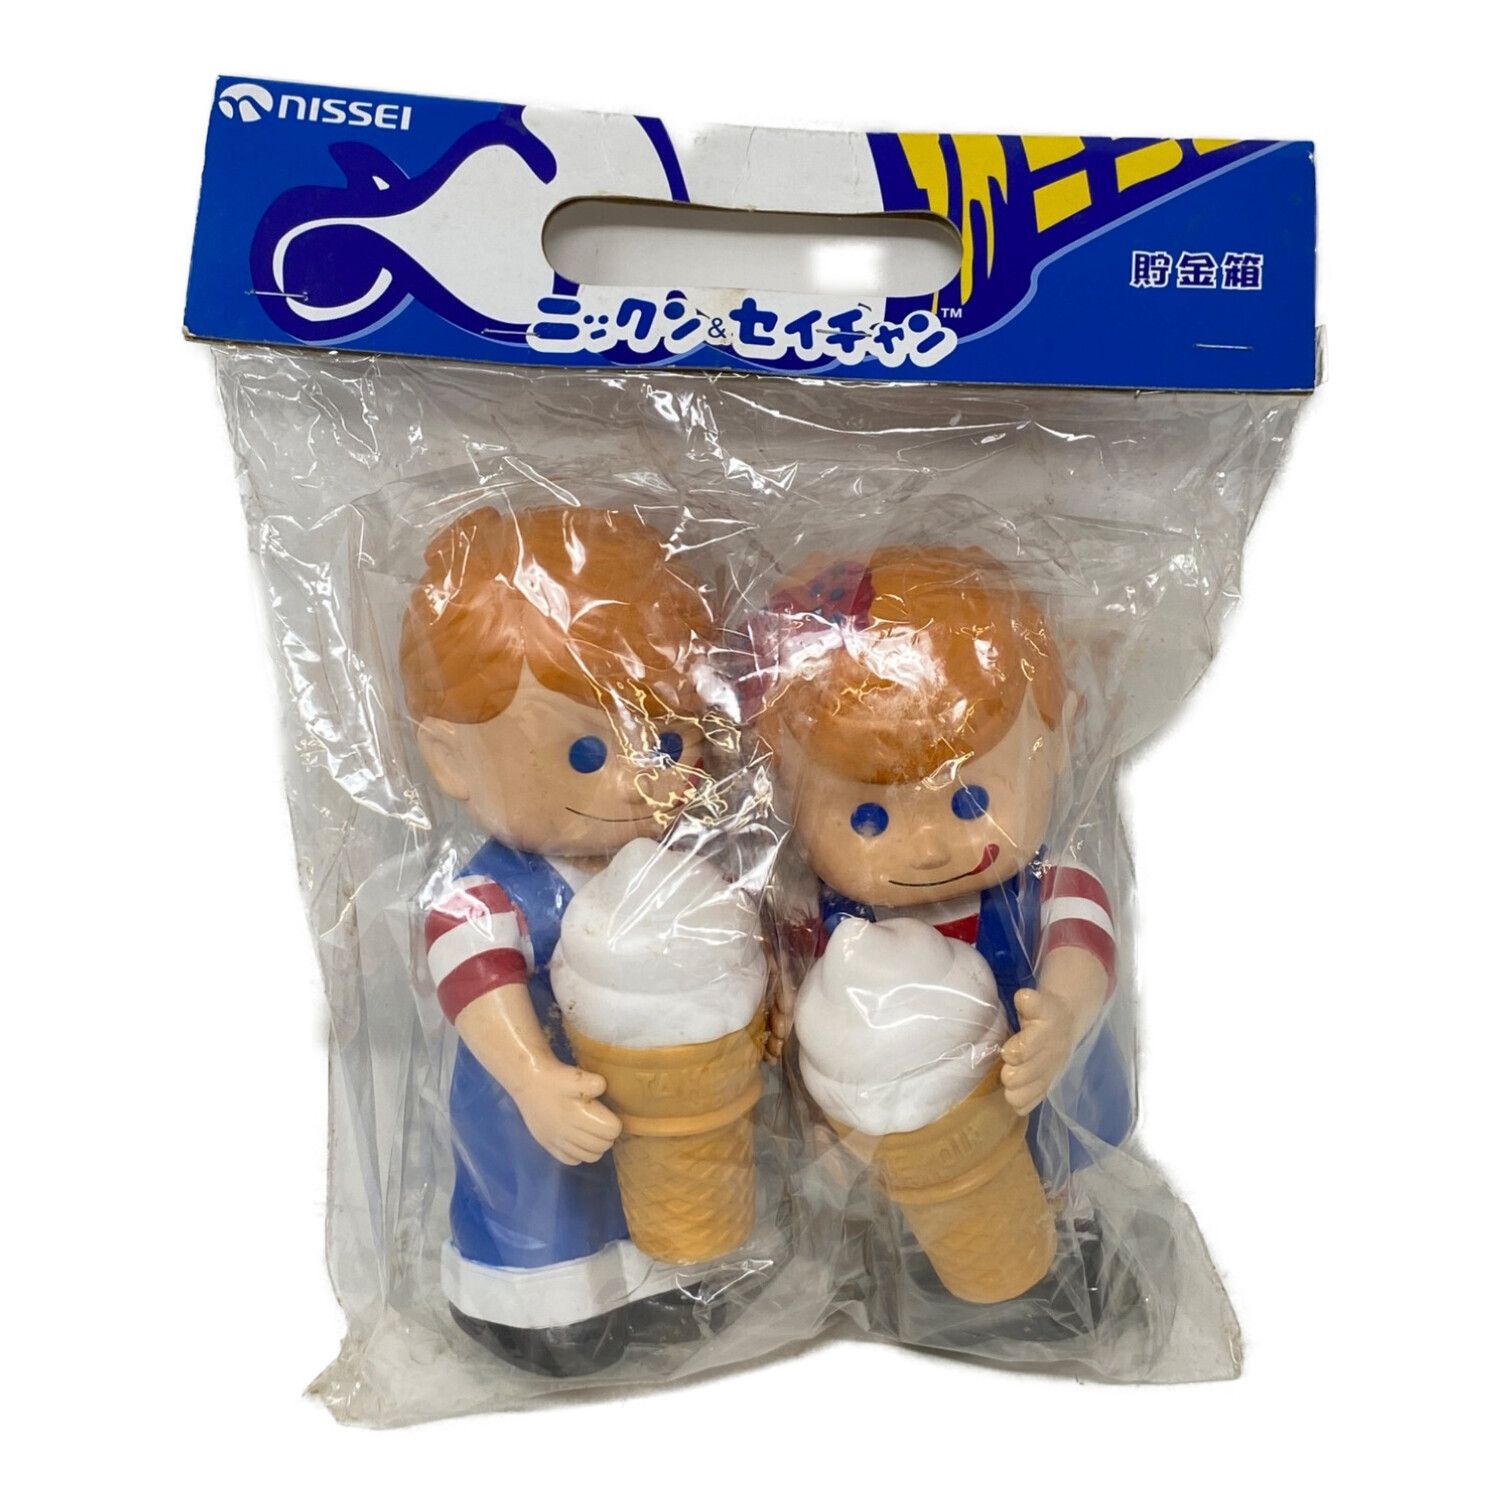 7,140円「日世ソフトクリーム」ニックン人形